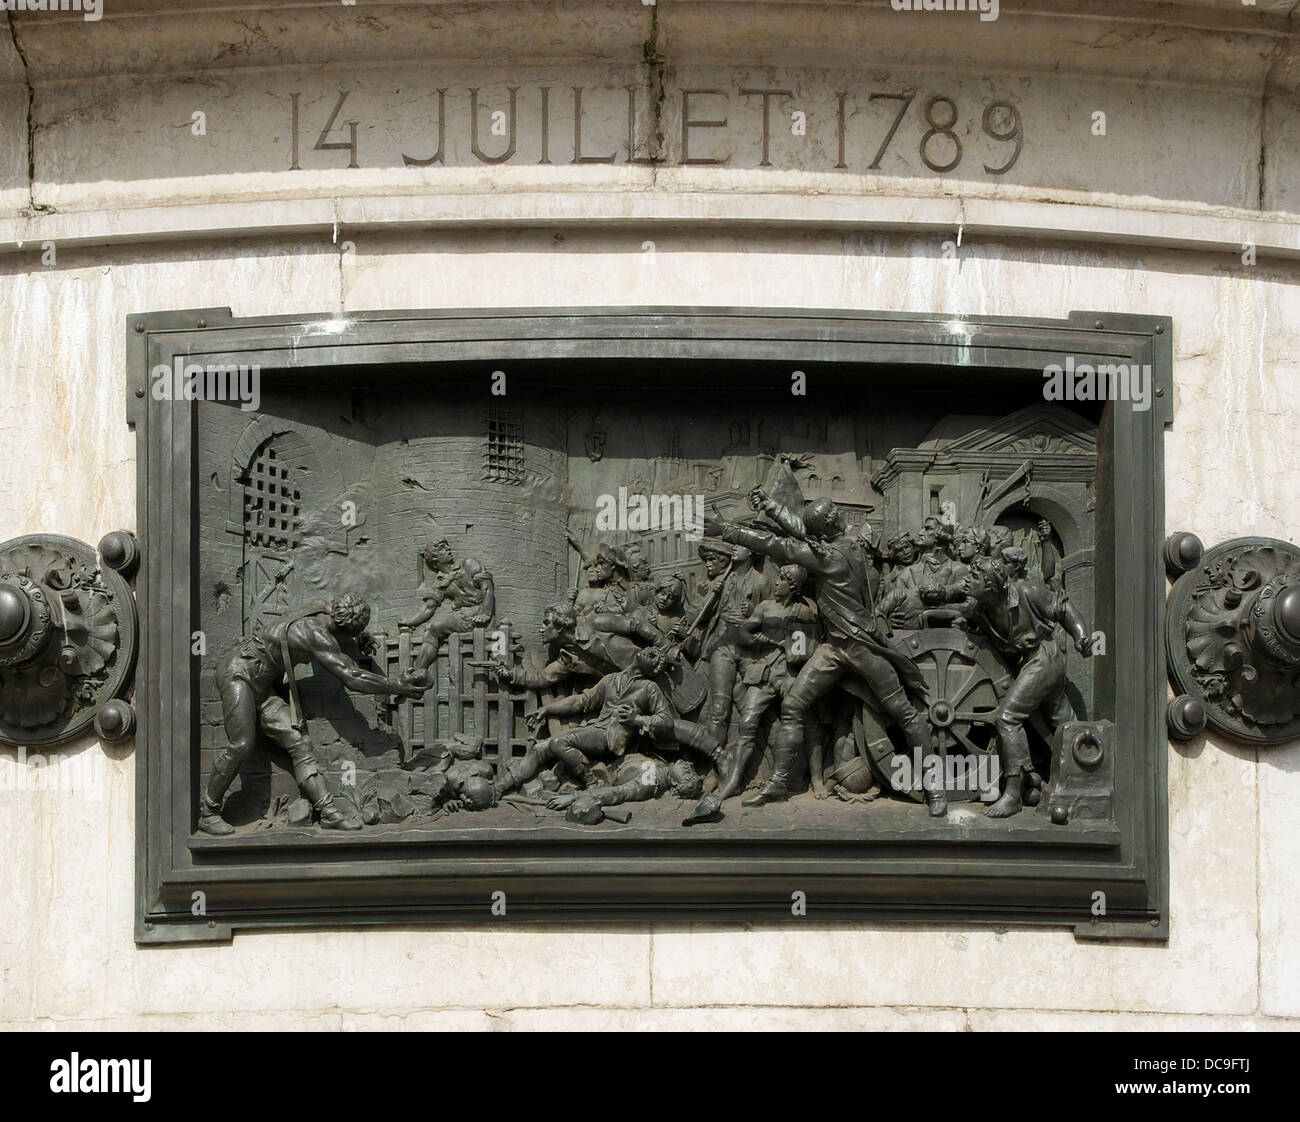 The Storming of the Bastille, 14 july 1789. Bronze relief at the 'Monument to the Republic', Place de la République, Paris Stock Photo